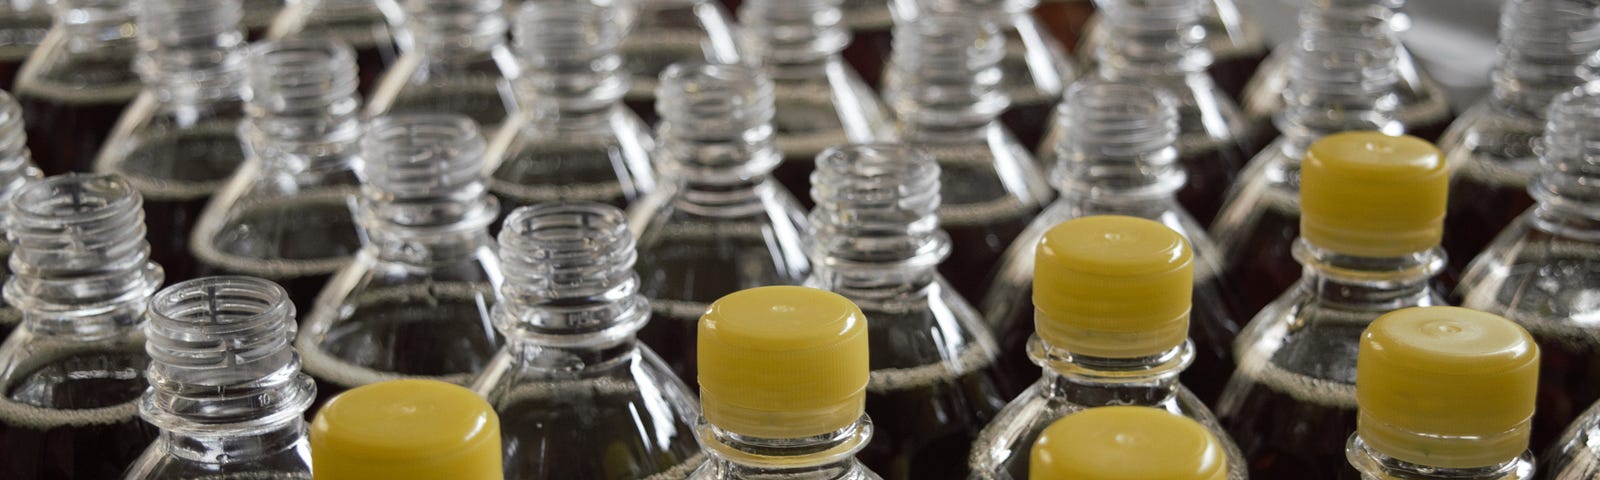 Bottles lined up at a bottling plant